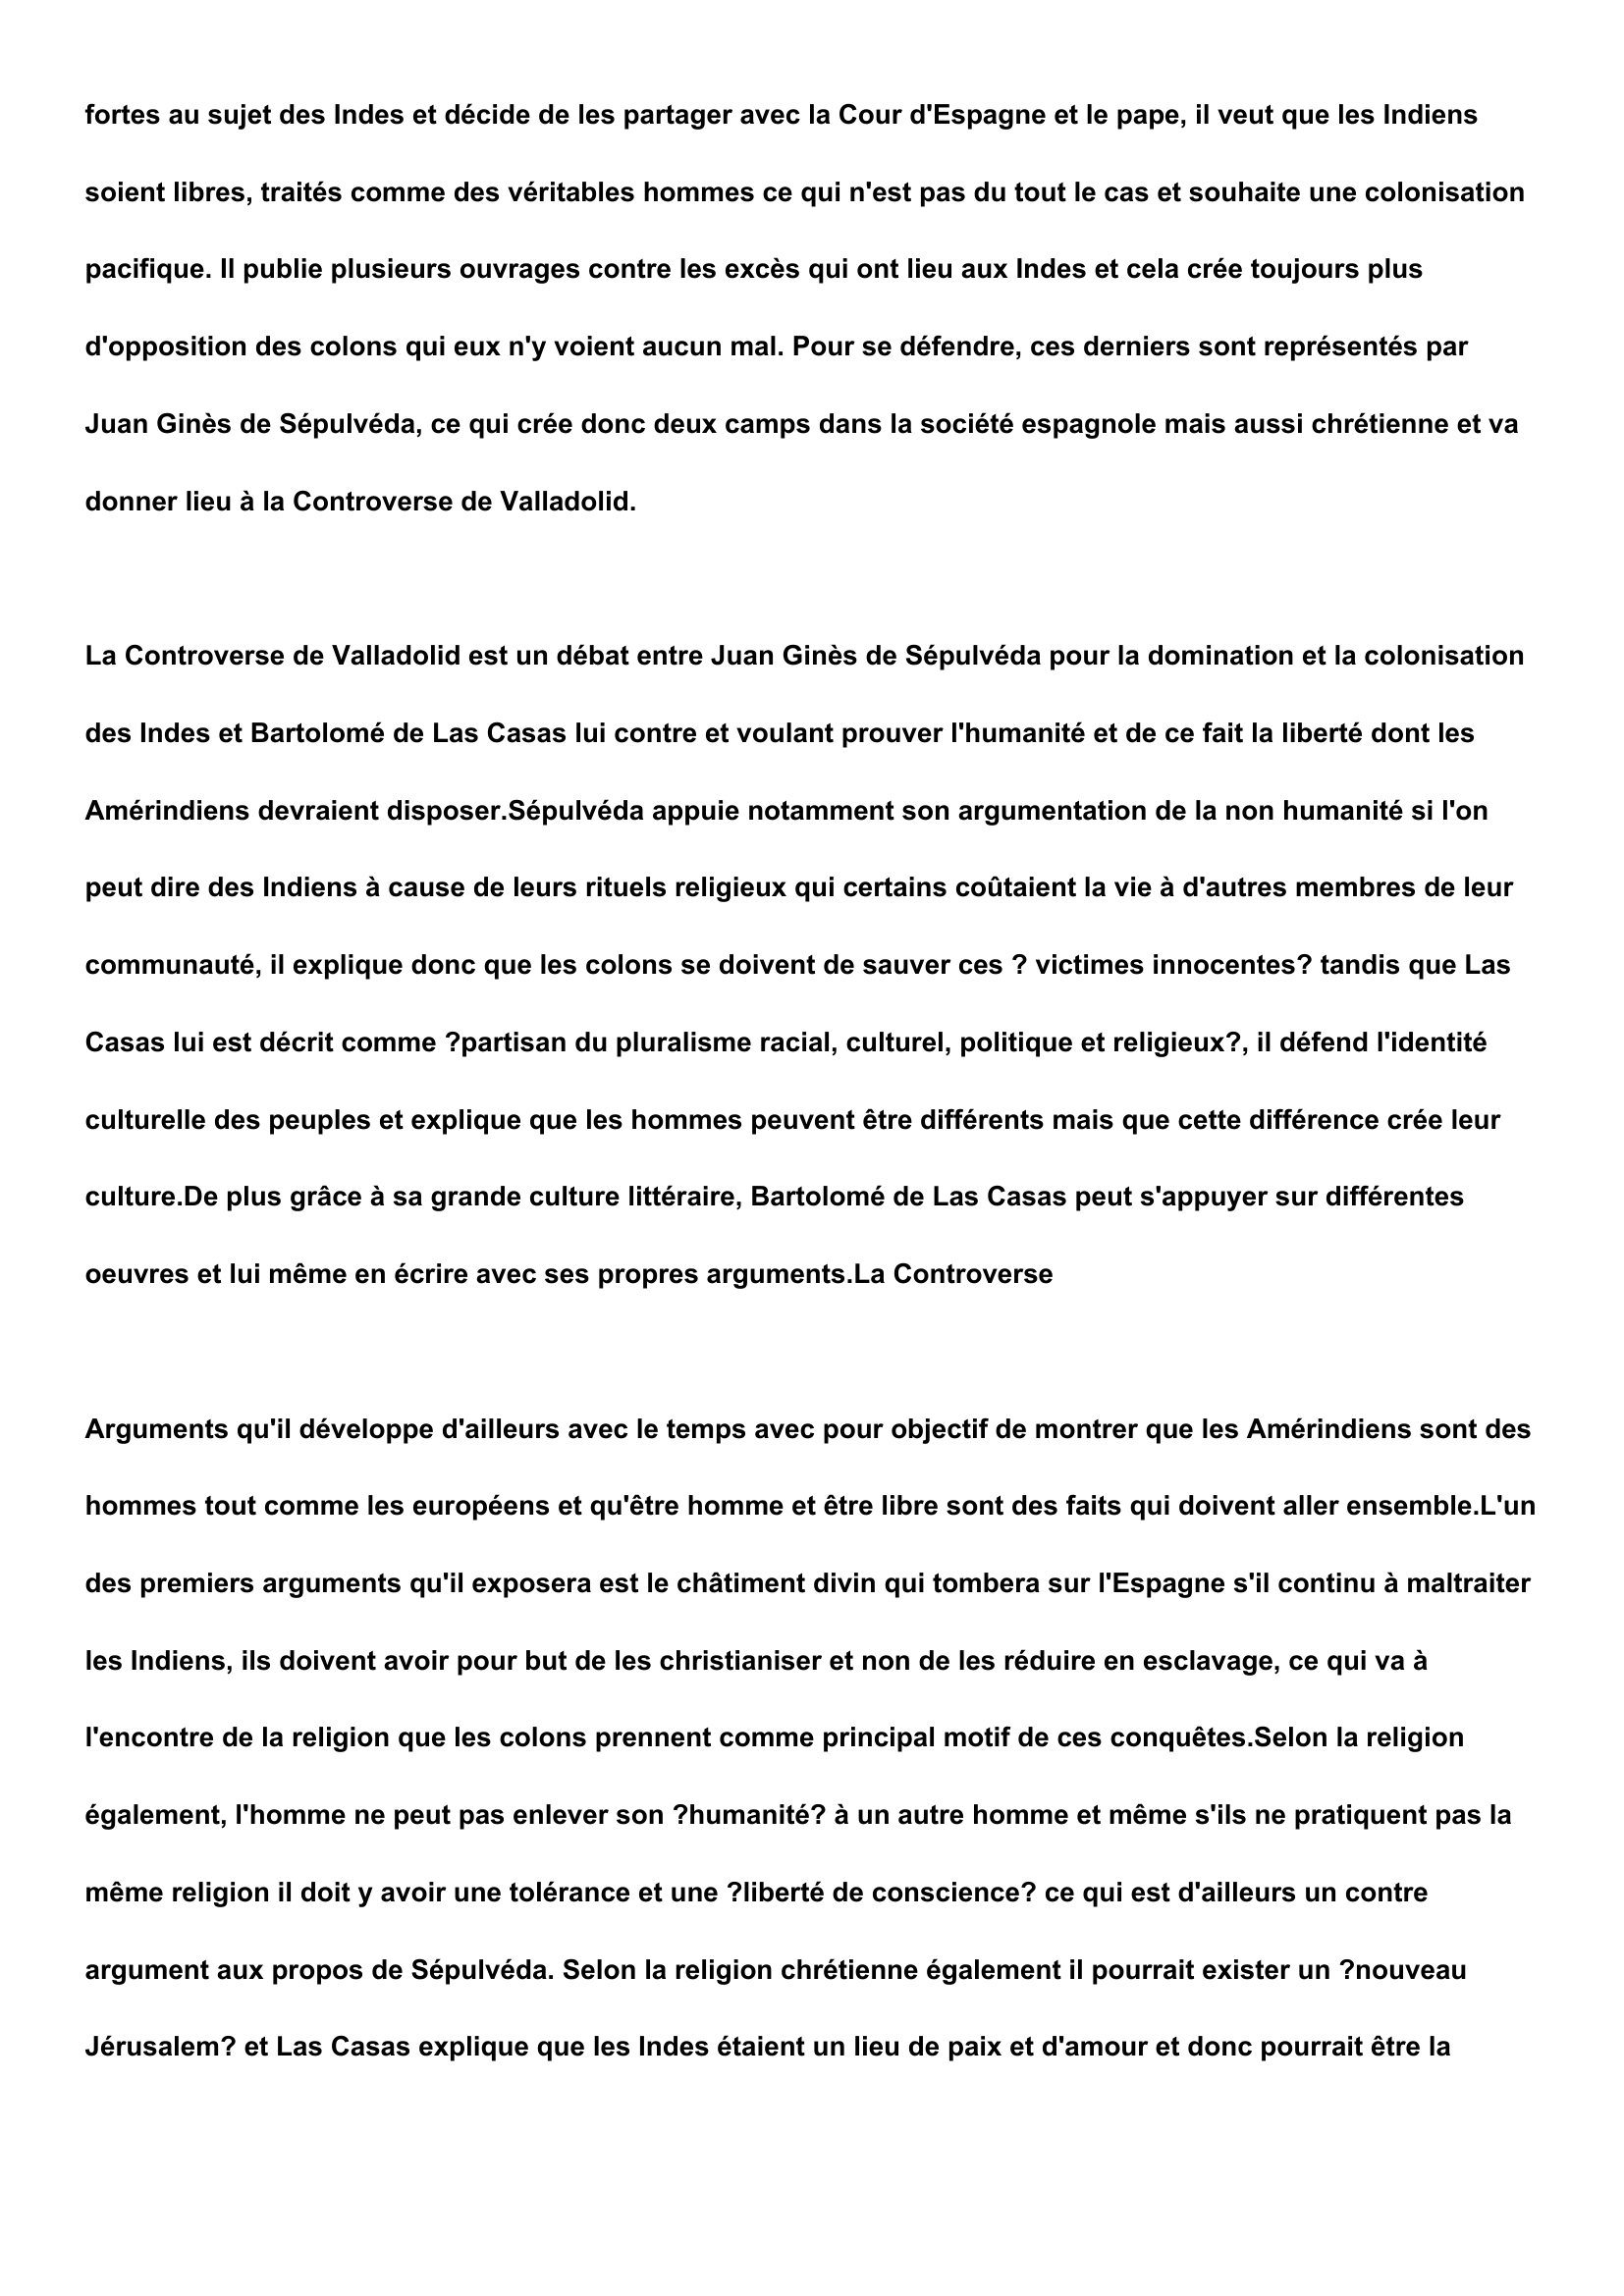 Prévisualisation du document Comment et à l'aide de quels arguments Bartolomé de Las Casas a-t-il défendu l'humanité des Amérindiens lors de la controverse de Valladolid ?